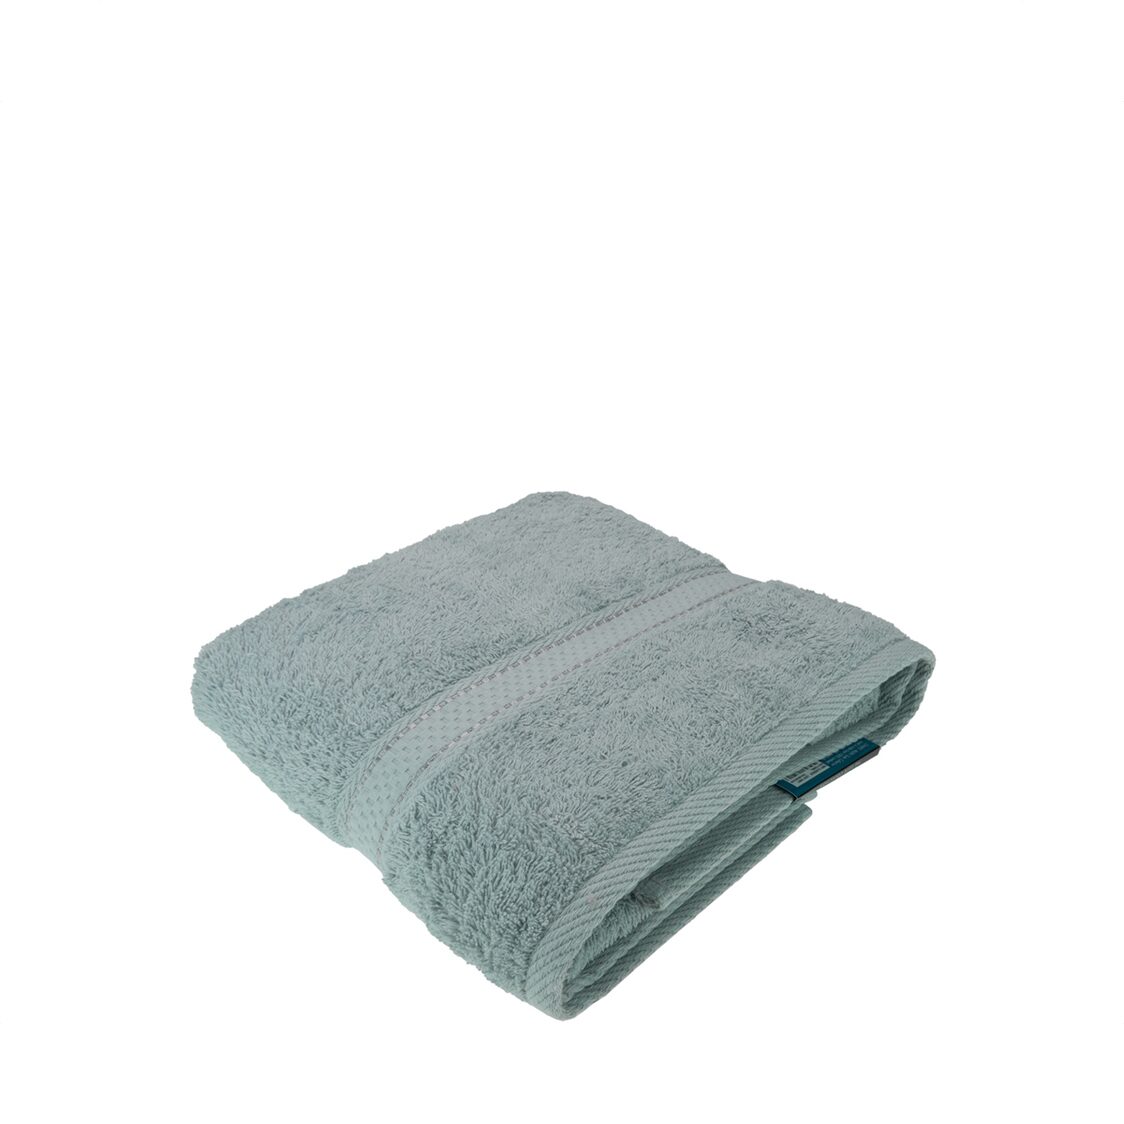 Charles Millen Suite Collection CT108 Classique Bath Towel Light Grey